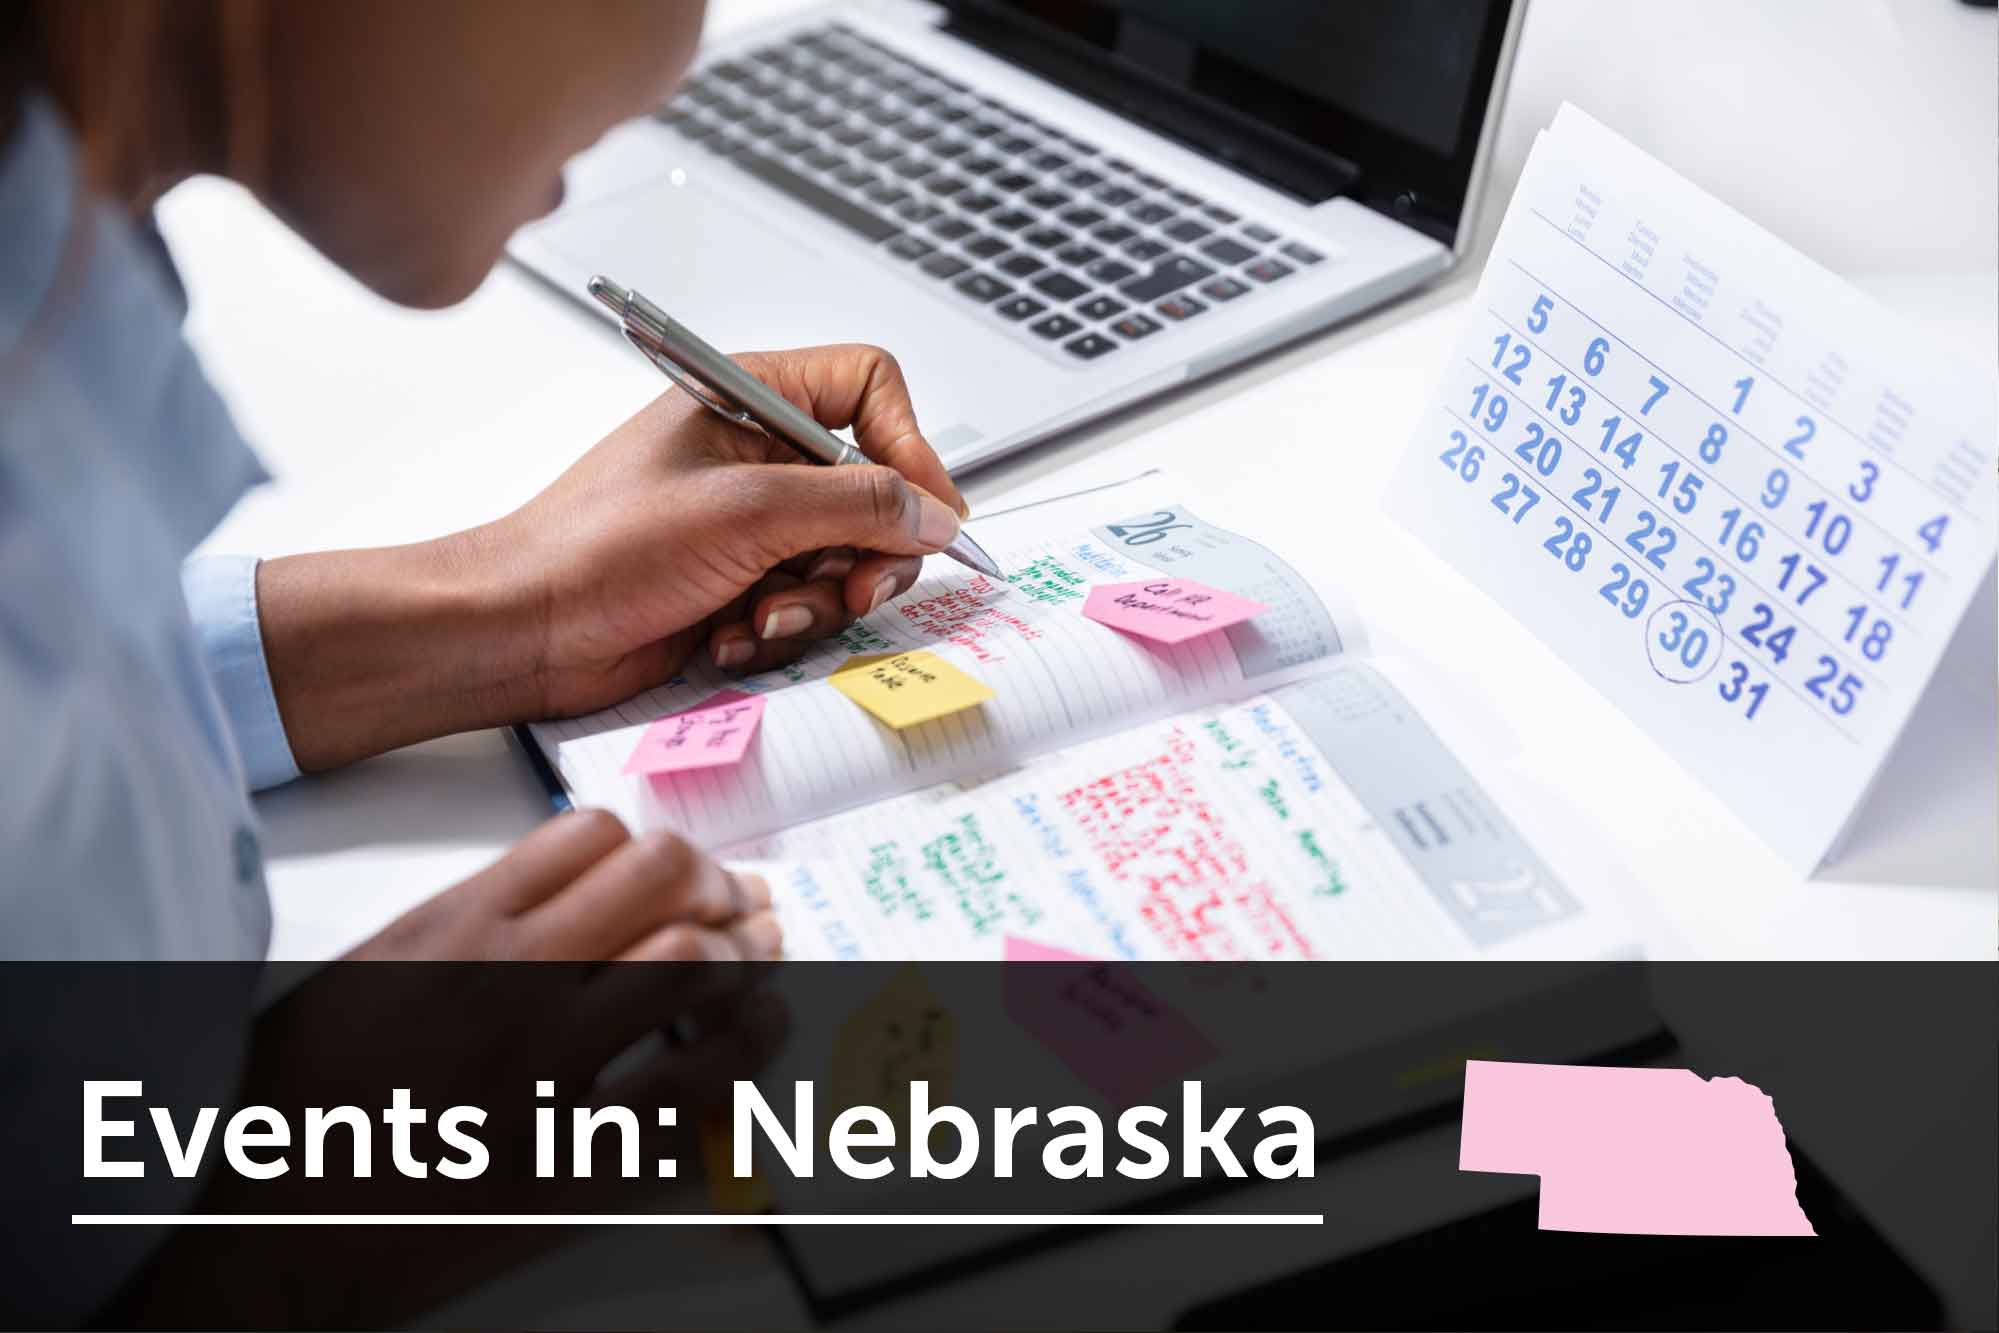 Women's business events in Nebraska